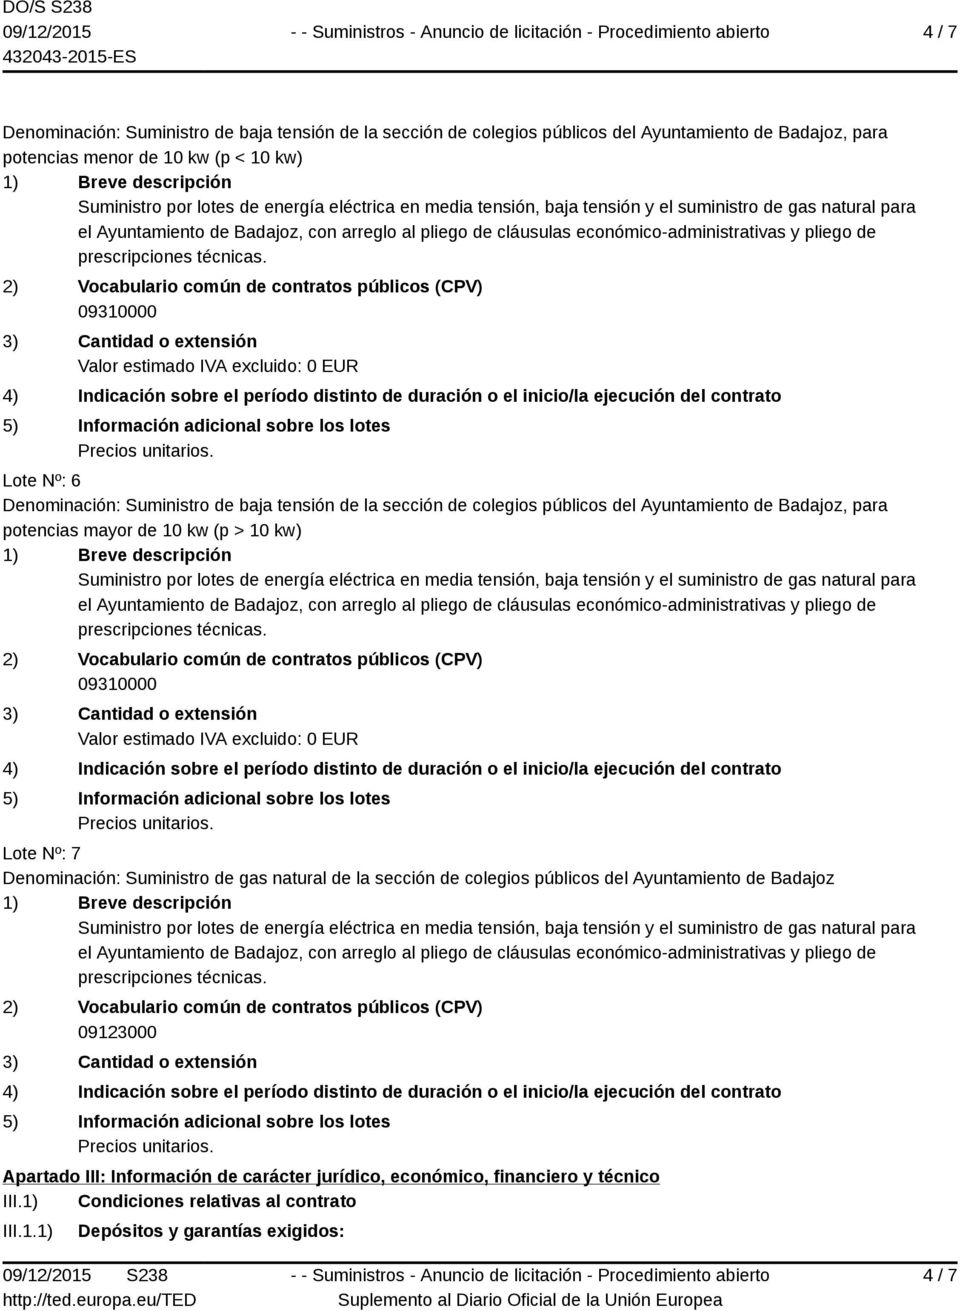 (p > 10 kw) Lote Nº: 7 Denominación: Suministro de gas natural de la sección de colegios públicos del Ayuntamiento de Badajoz 09123000 Apartado III: